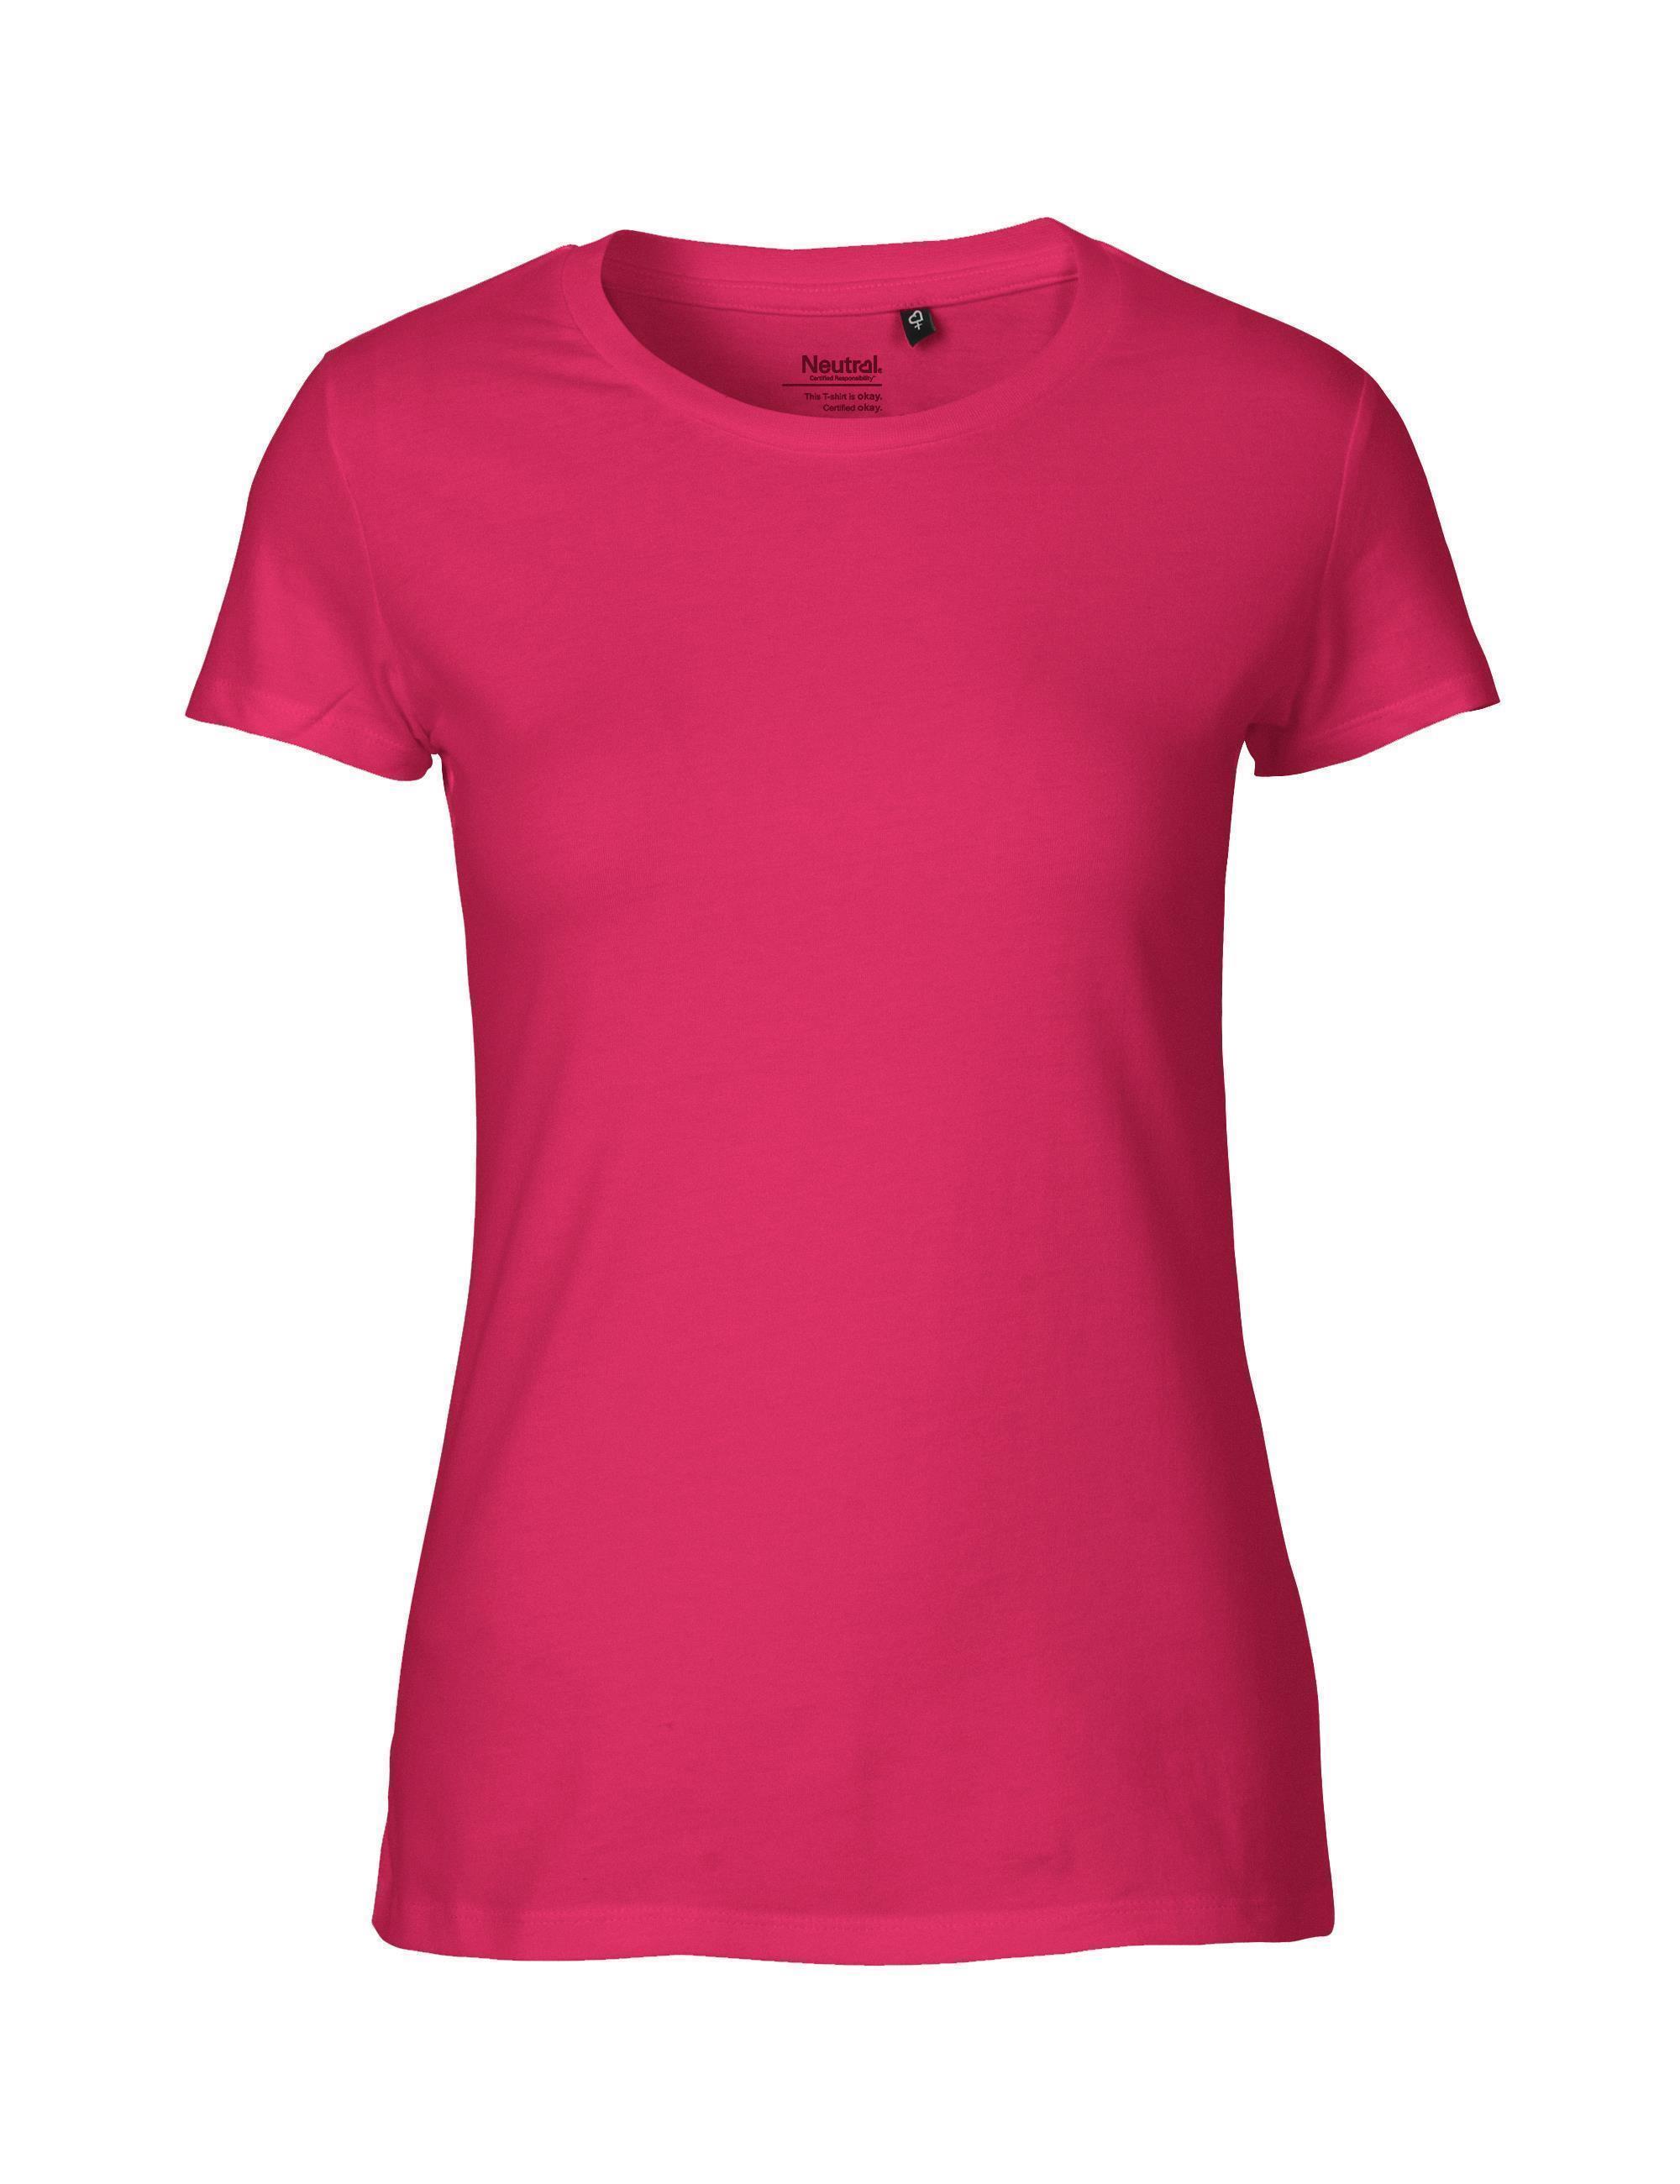 Fairtrade Organic Ladies Fit T-shirt 155 g/m² Neutral®